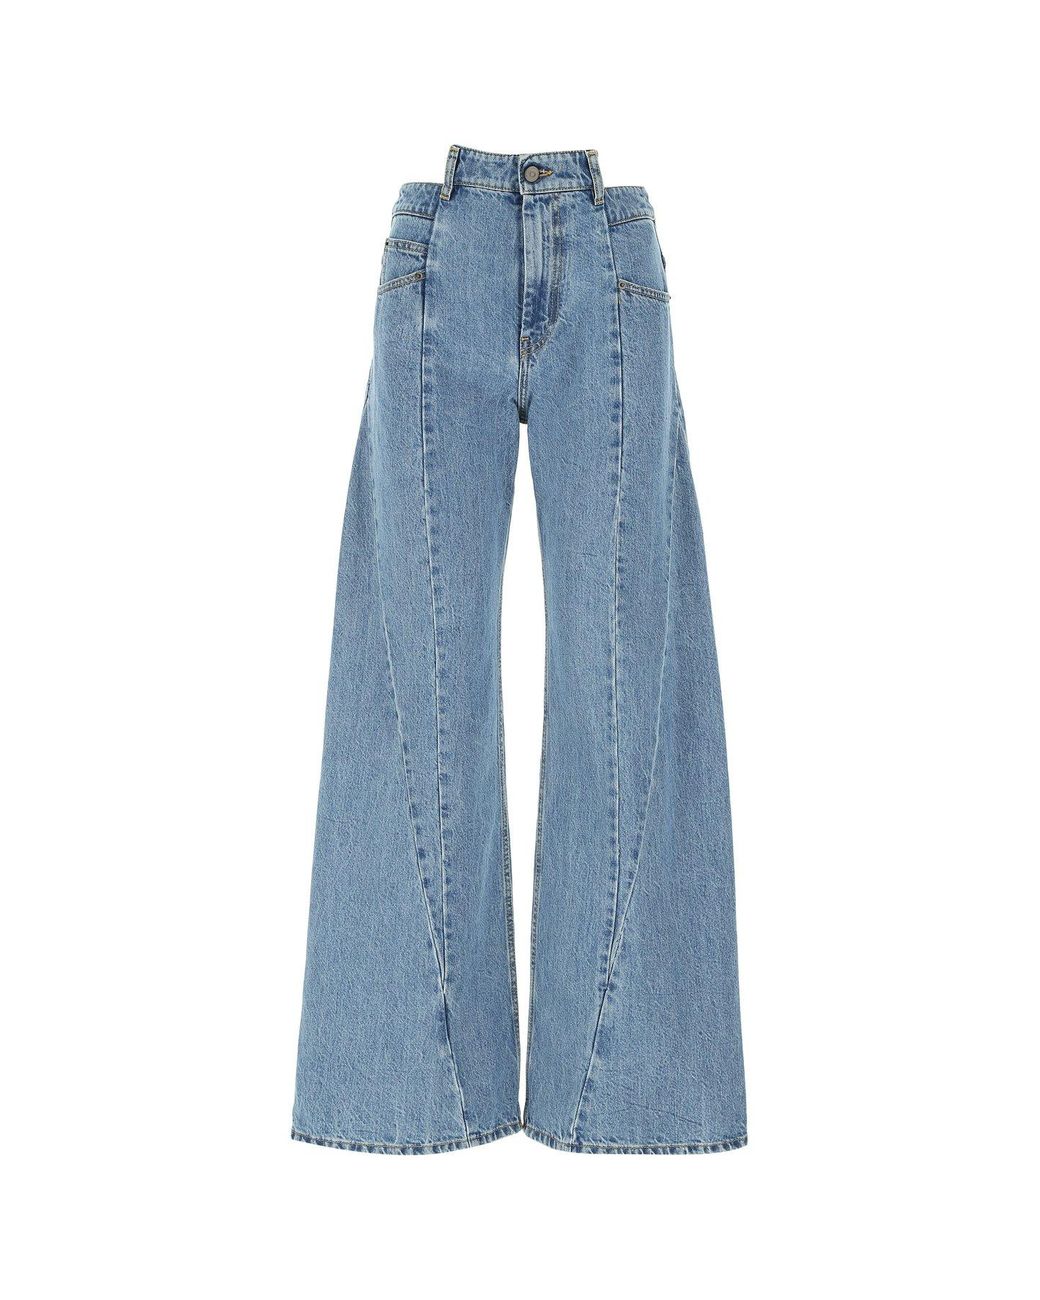 Maison Margiela Denim Décortiqué Flared Jeans in Blue - Lyst